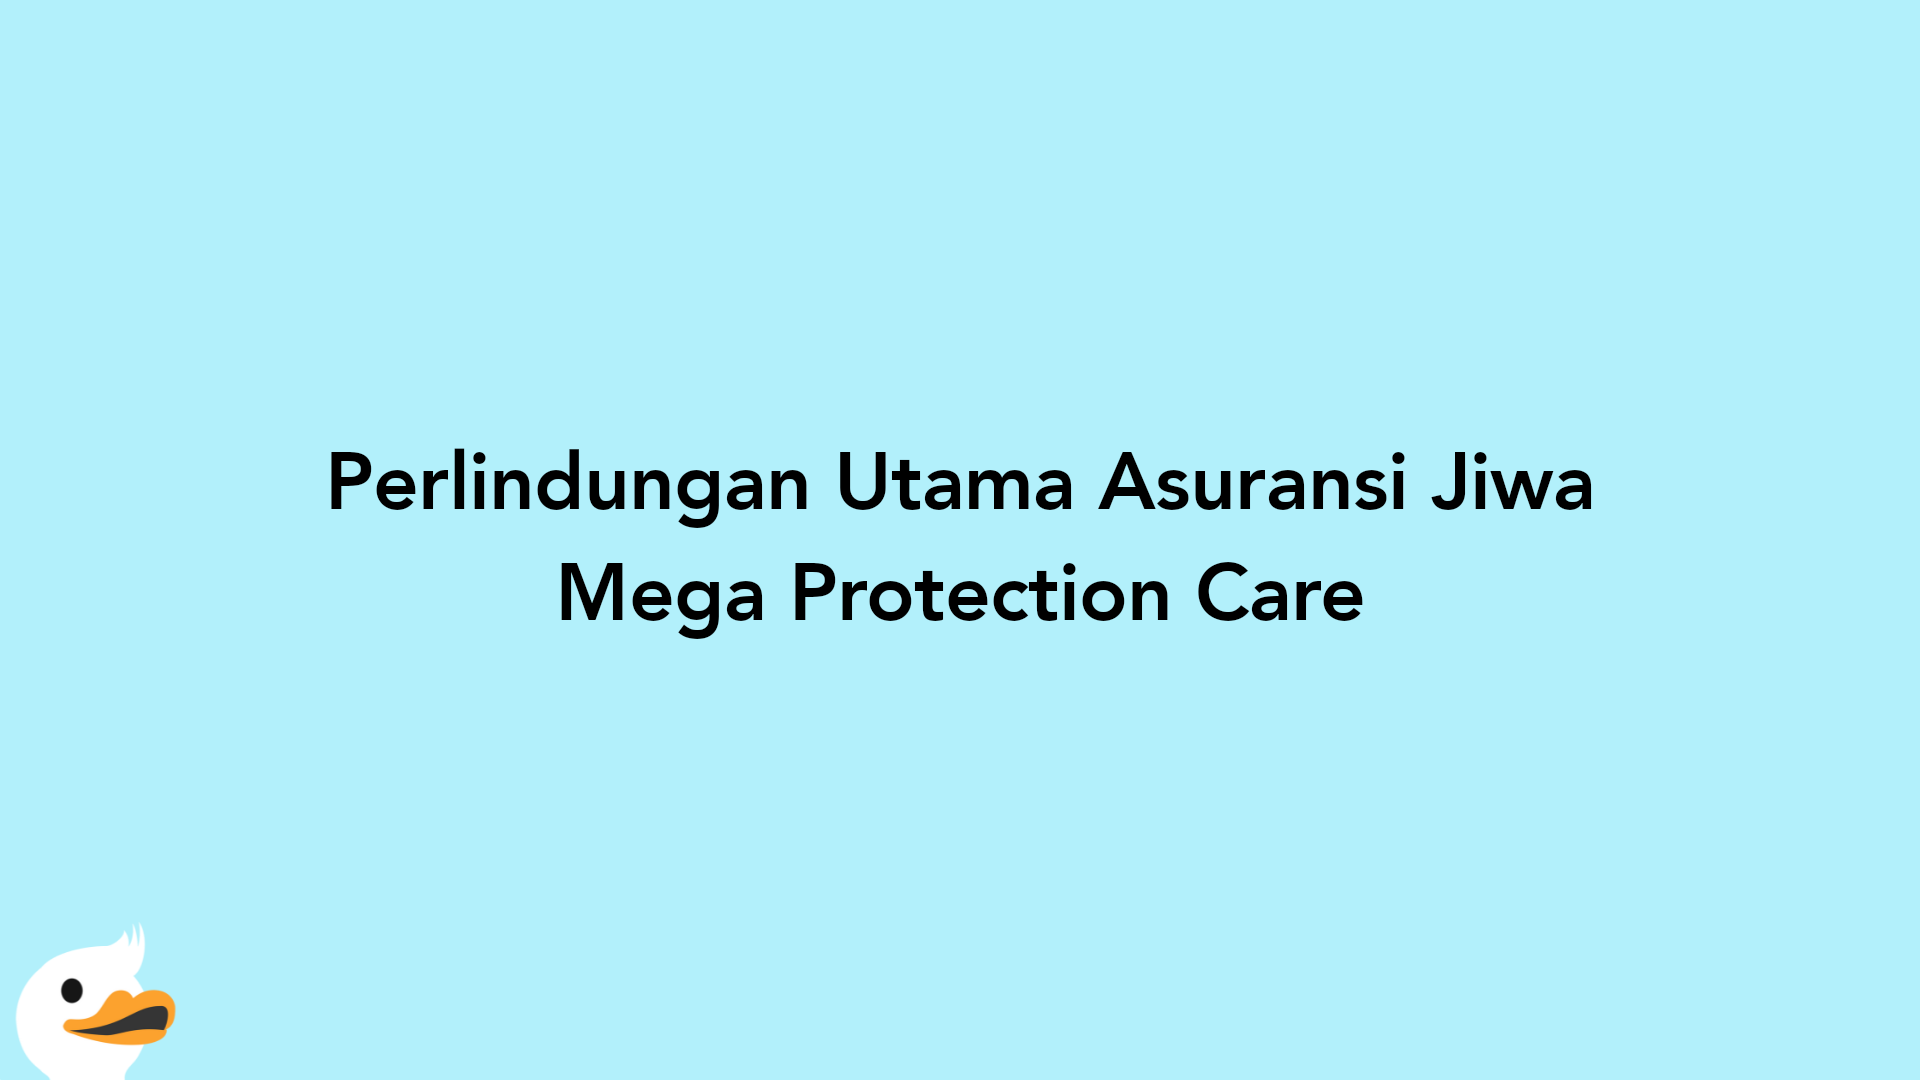 Perlindungan Utama Asuransi Jiwa Mega Protection Care